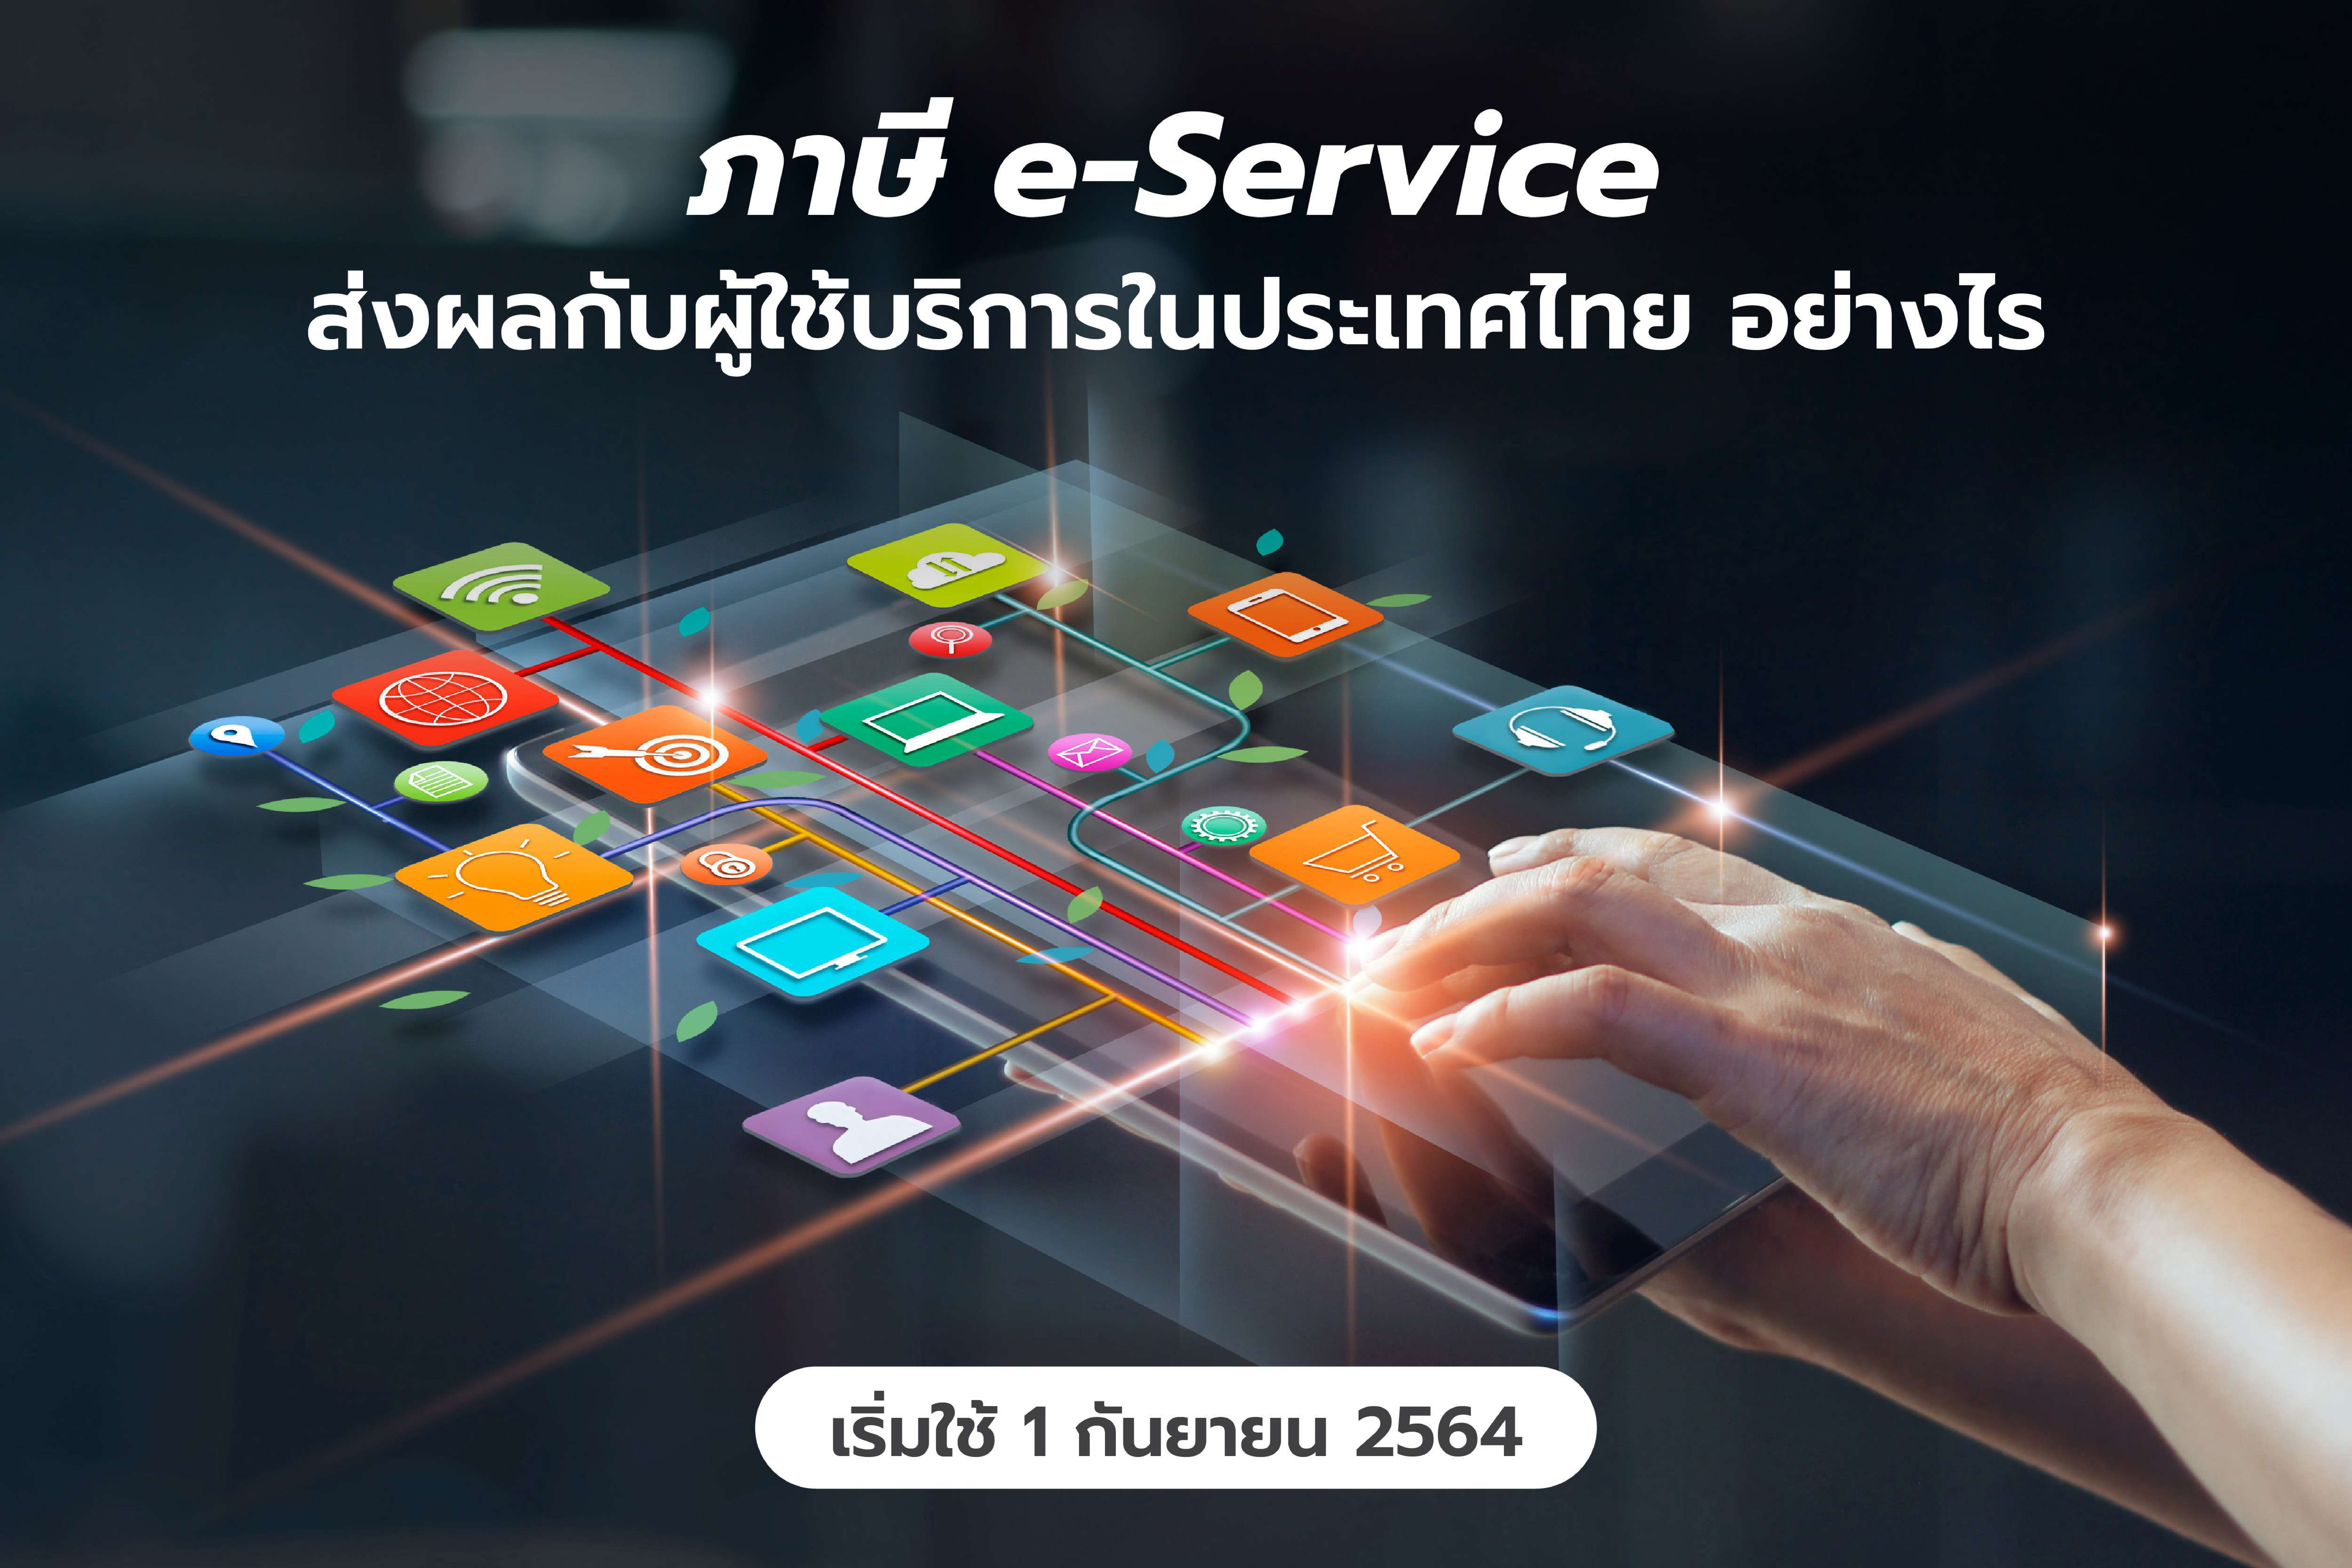 ภาษี e-Service ส่งผลกับผู้ใช้บริการในประเทศไทย อย่างไร